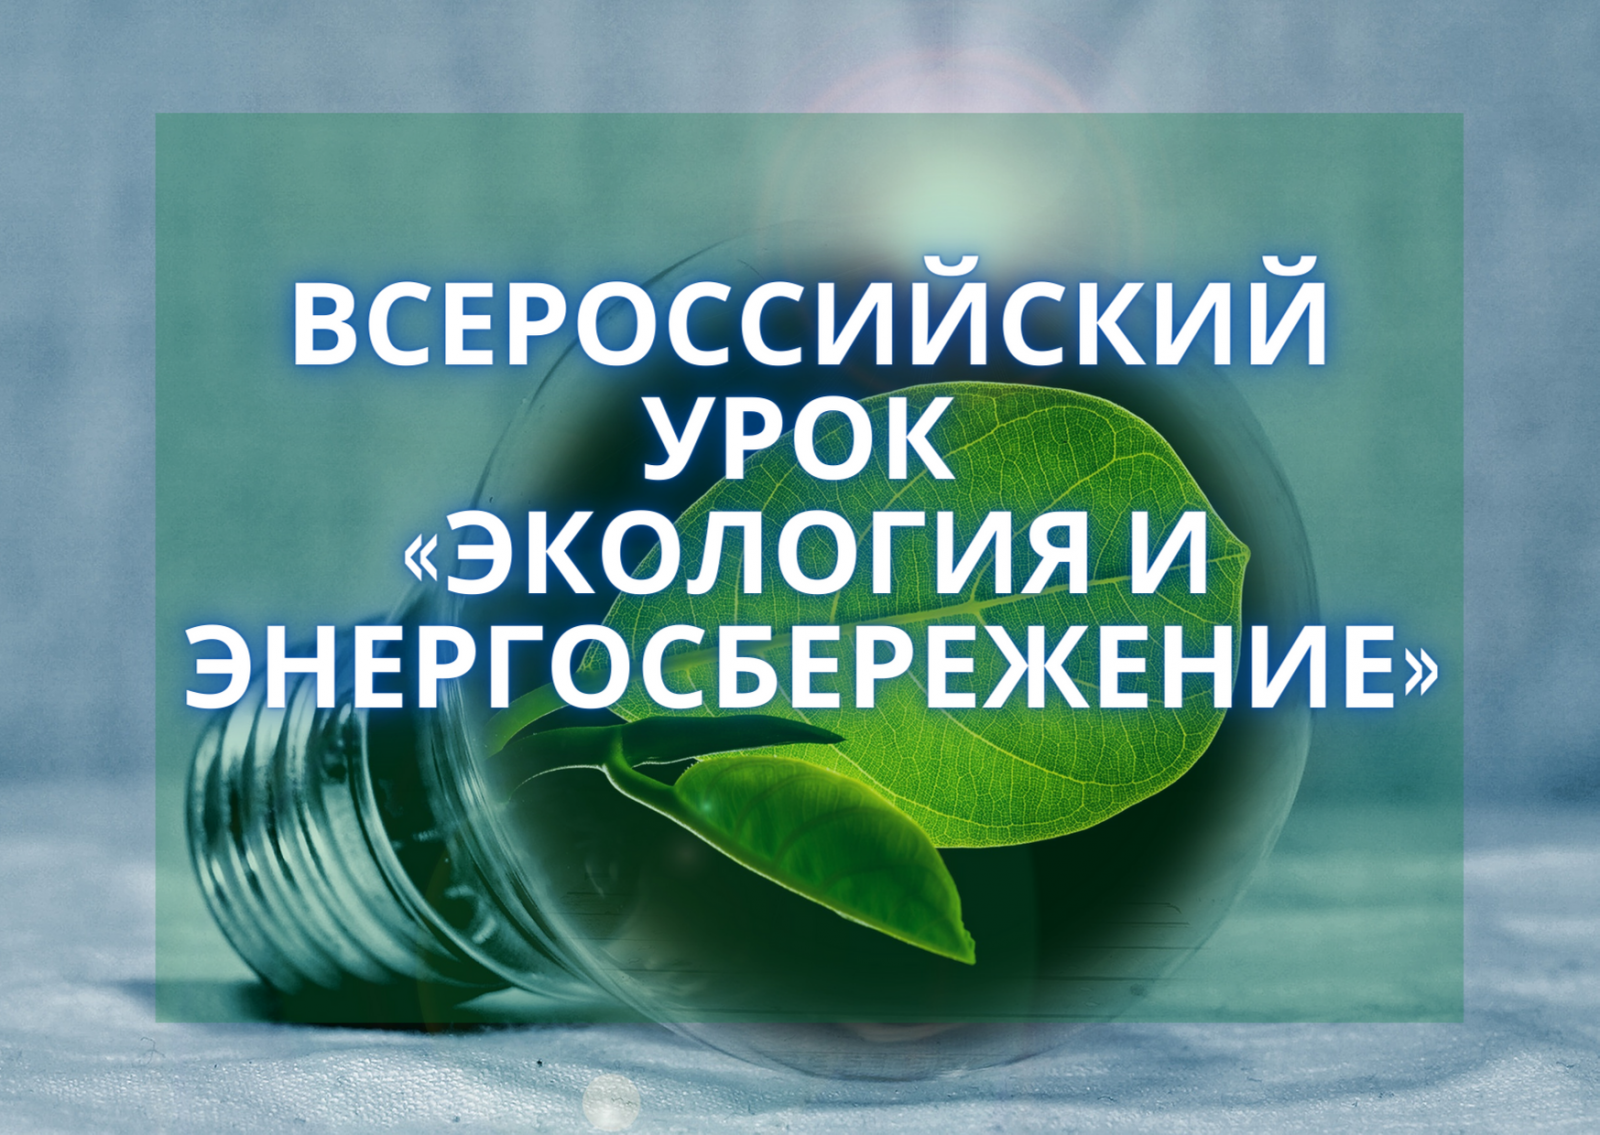 Всероссийский урок «Экологии и энергосбережения».